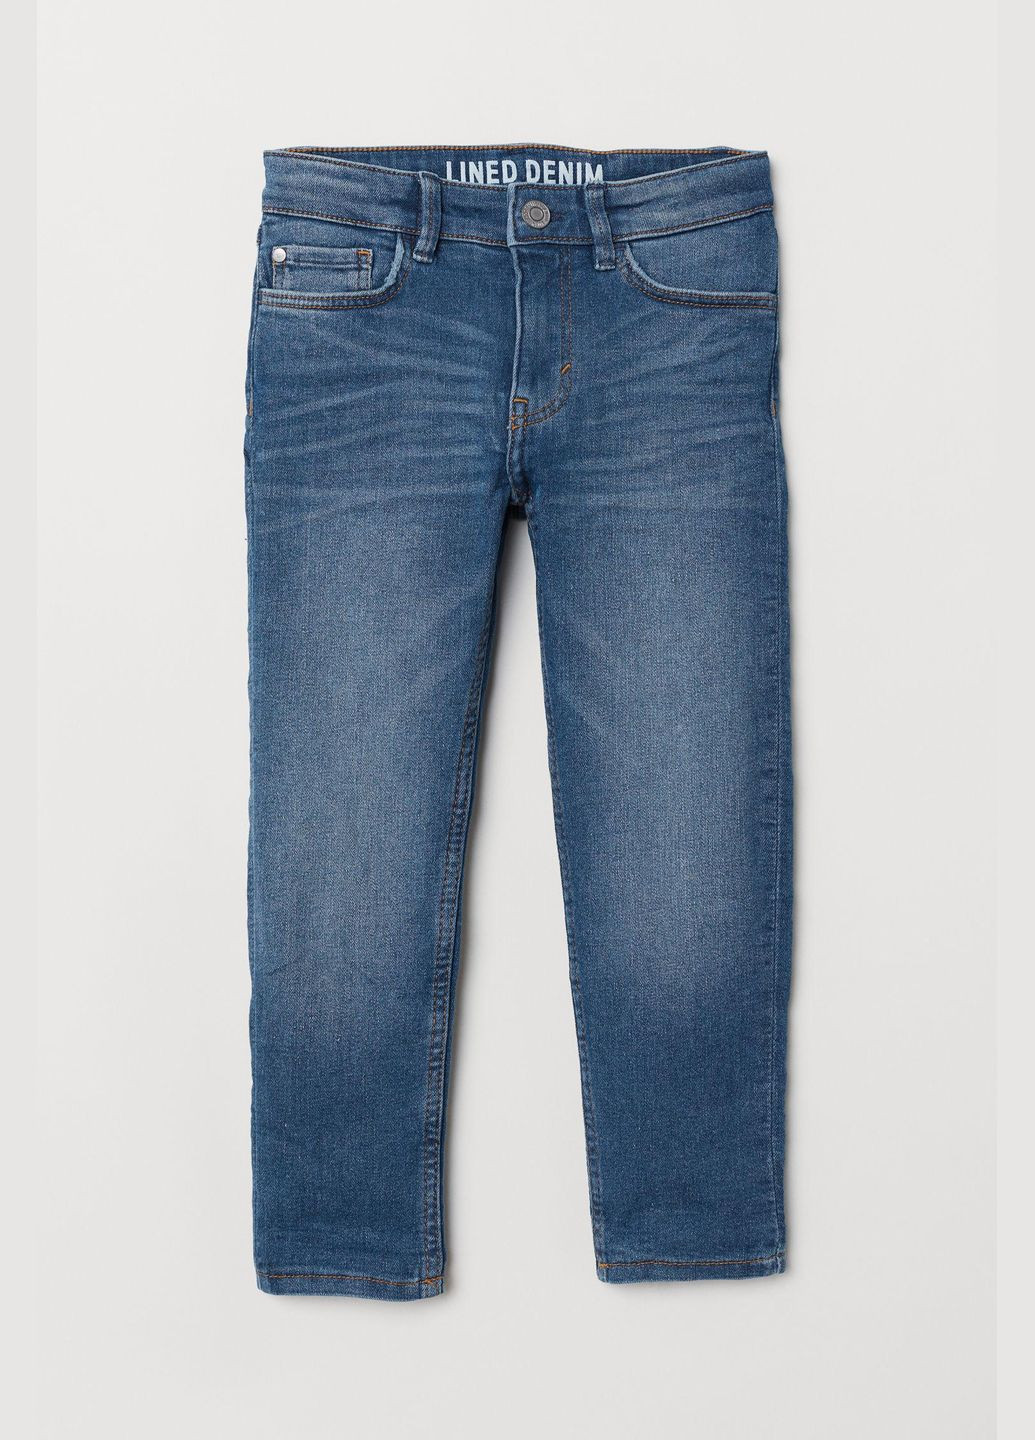 Синие джинсы демисезон,синий, H&M